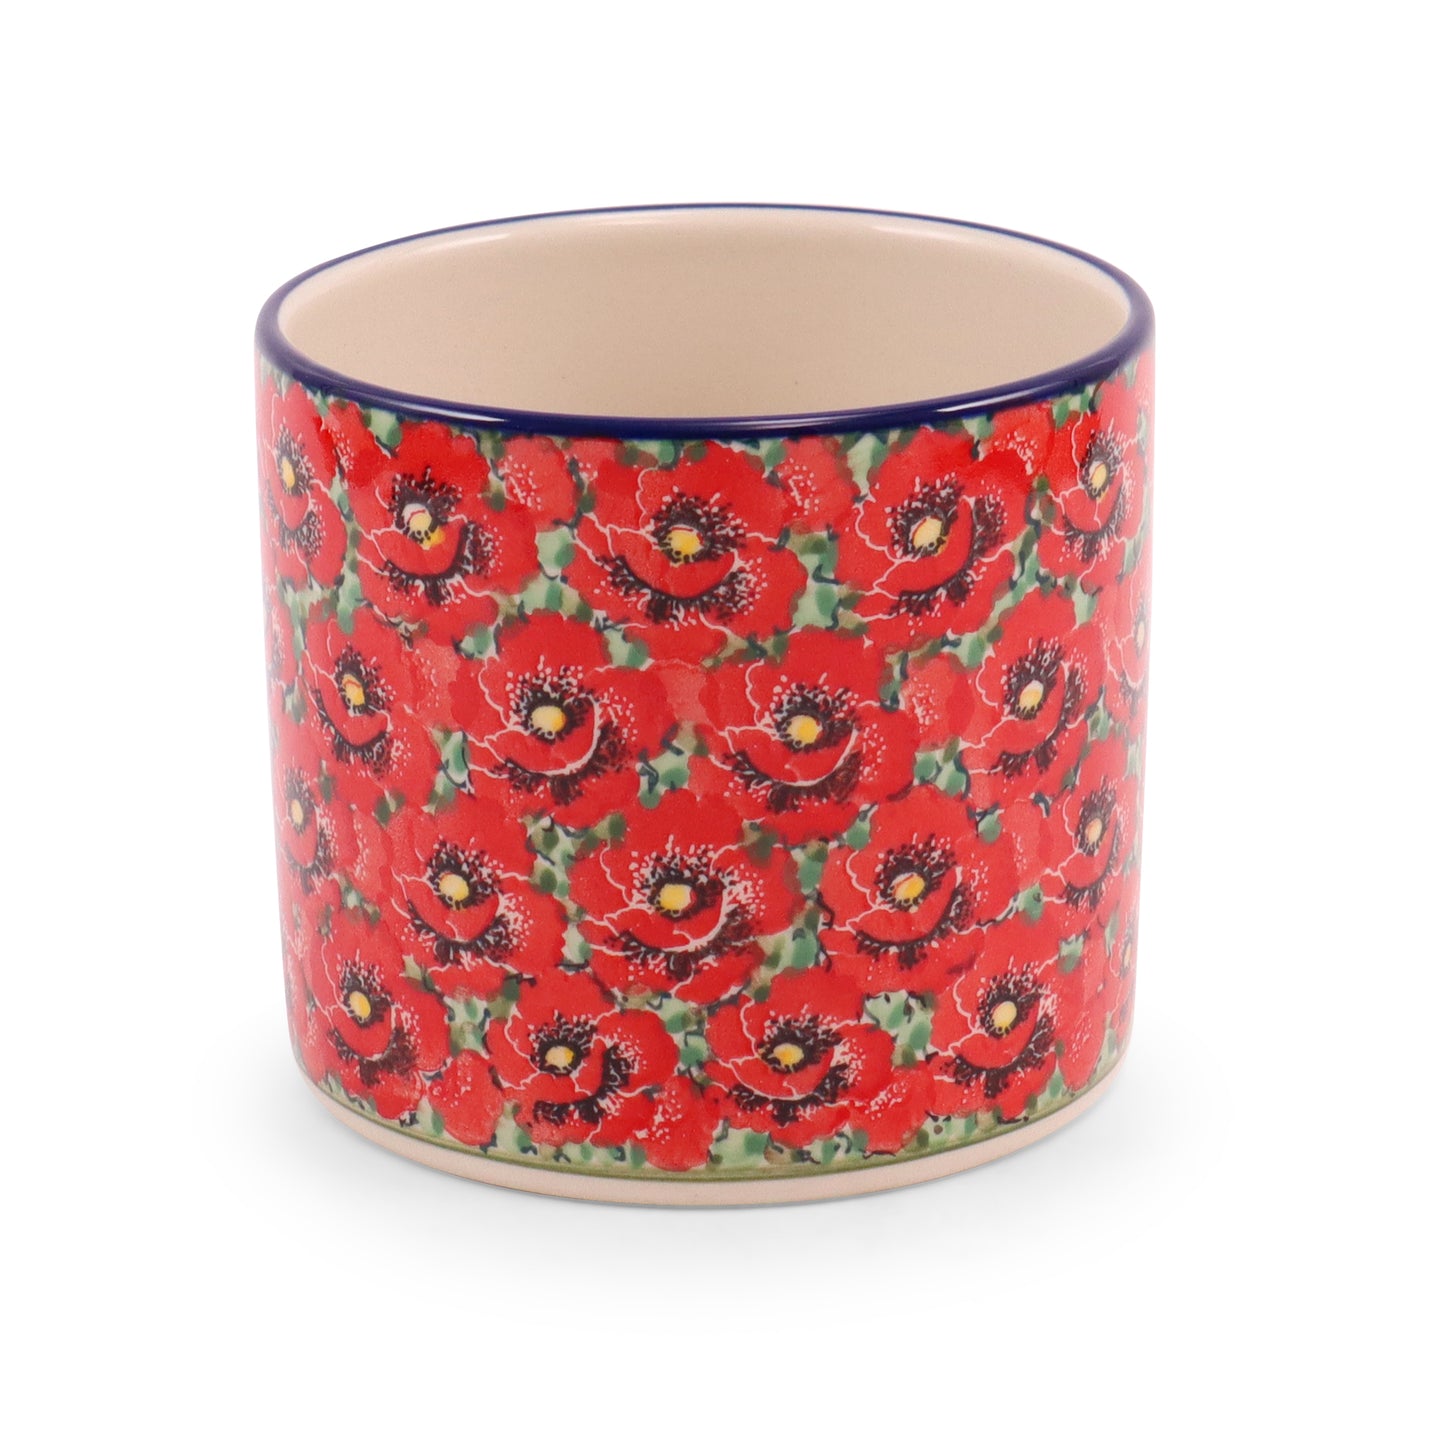 5"x4.5" Flower Pot. Pattern: Scarlet Surroundings